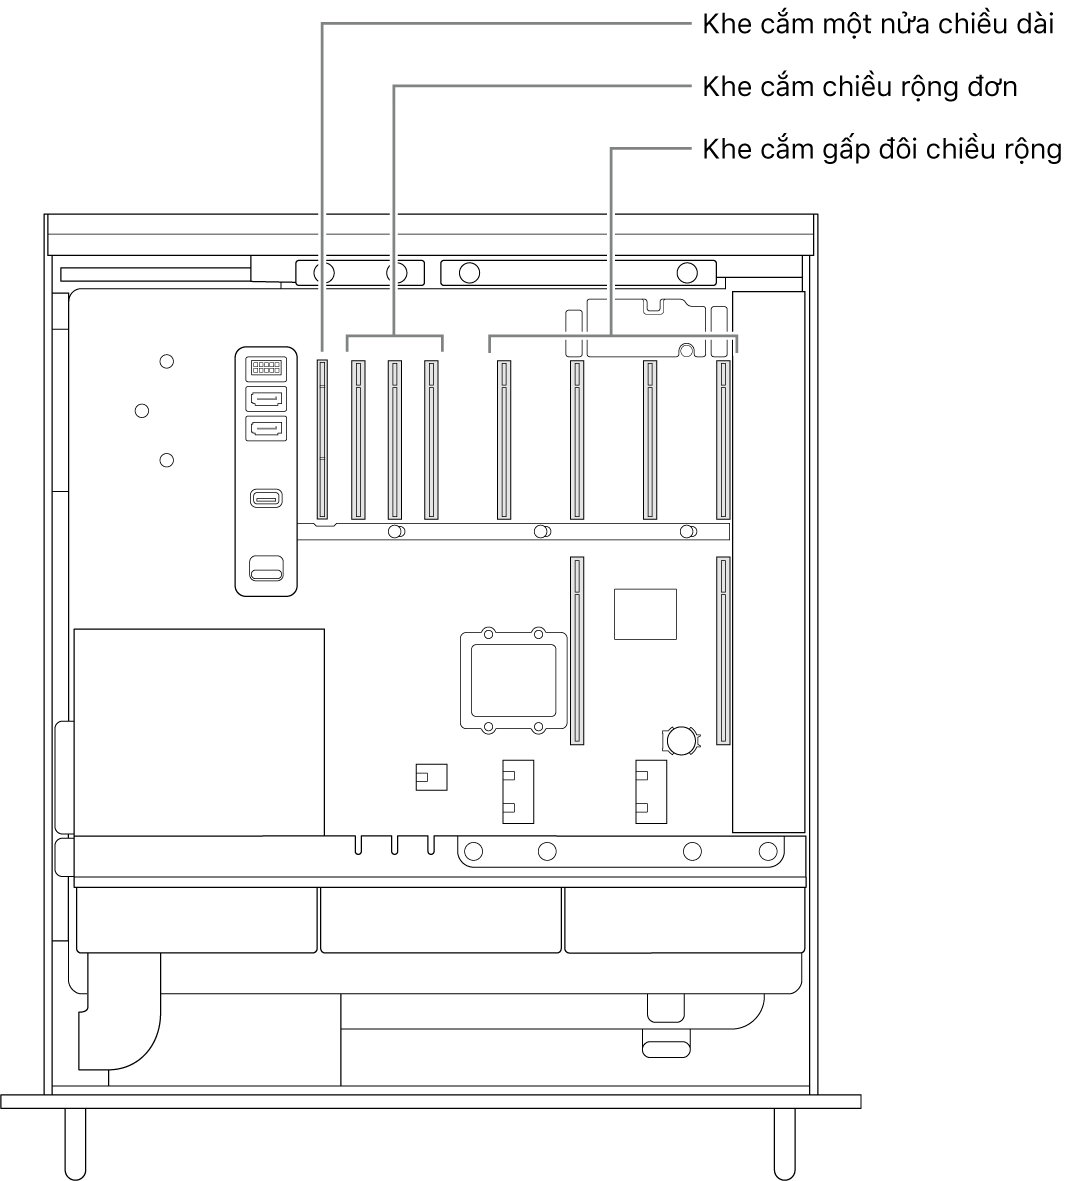 Mặt bên của Mac Pro được mở với các chú thích minh họa vị trí của bốn khe cắm gấp đôi chiều rộng, ba khe cắm chiều rộng đơn và khe cắm một nửa chiều dài.